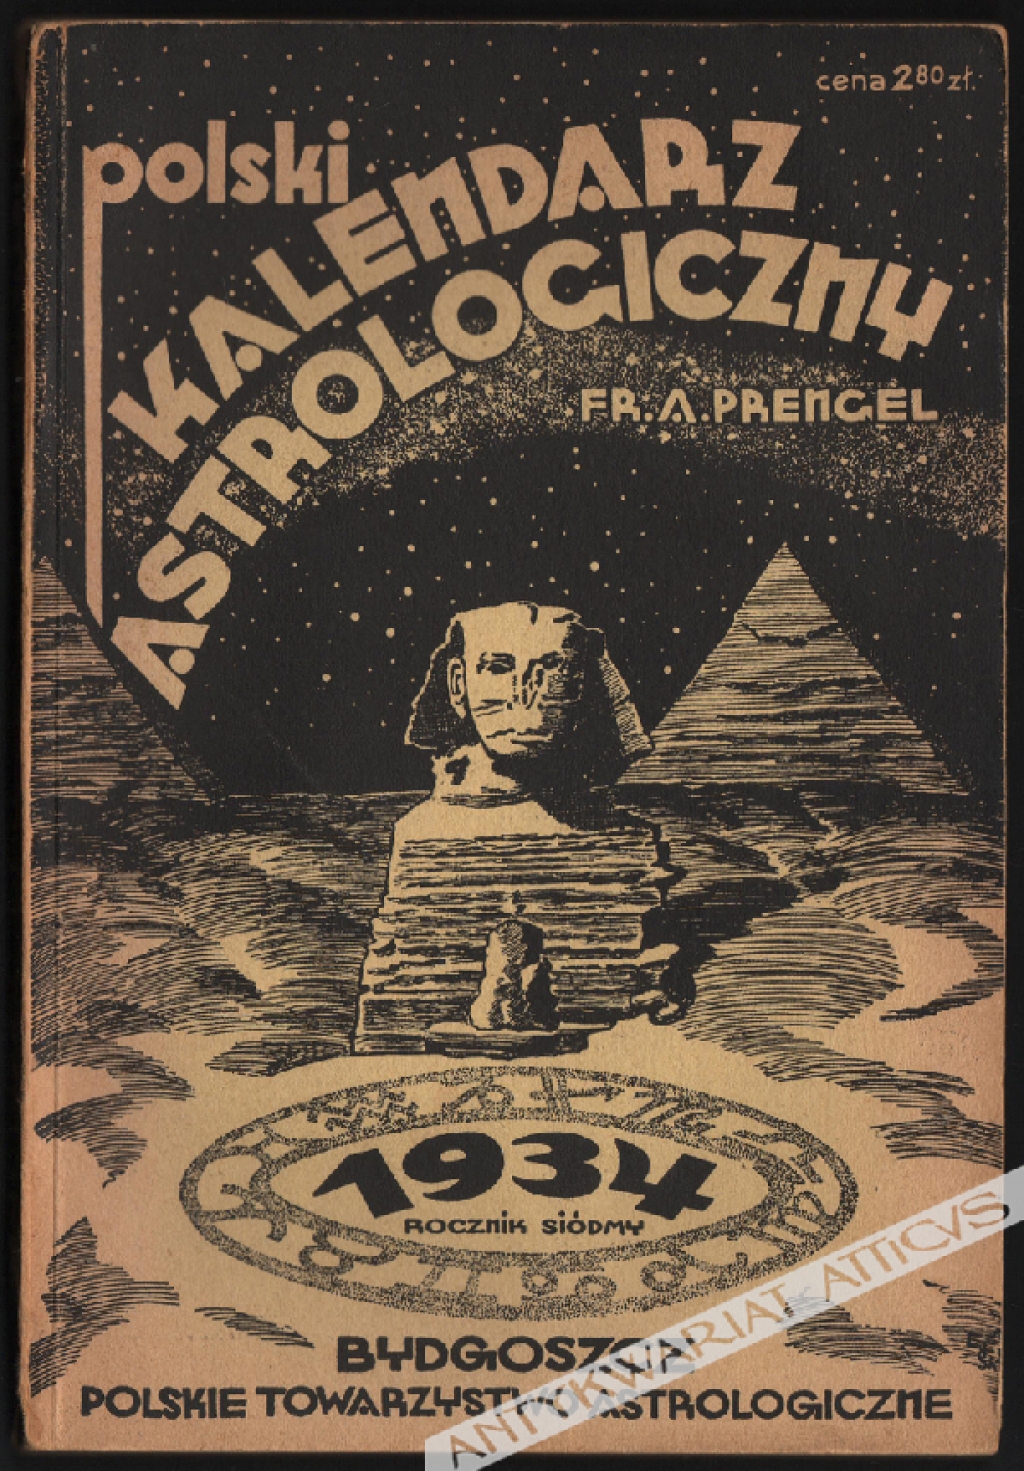 Polski Kalendarz Astrologiczny (Almanach wpływów kosmicznych) na rok 1934, rocznik siódmy